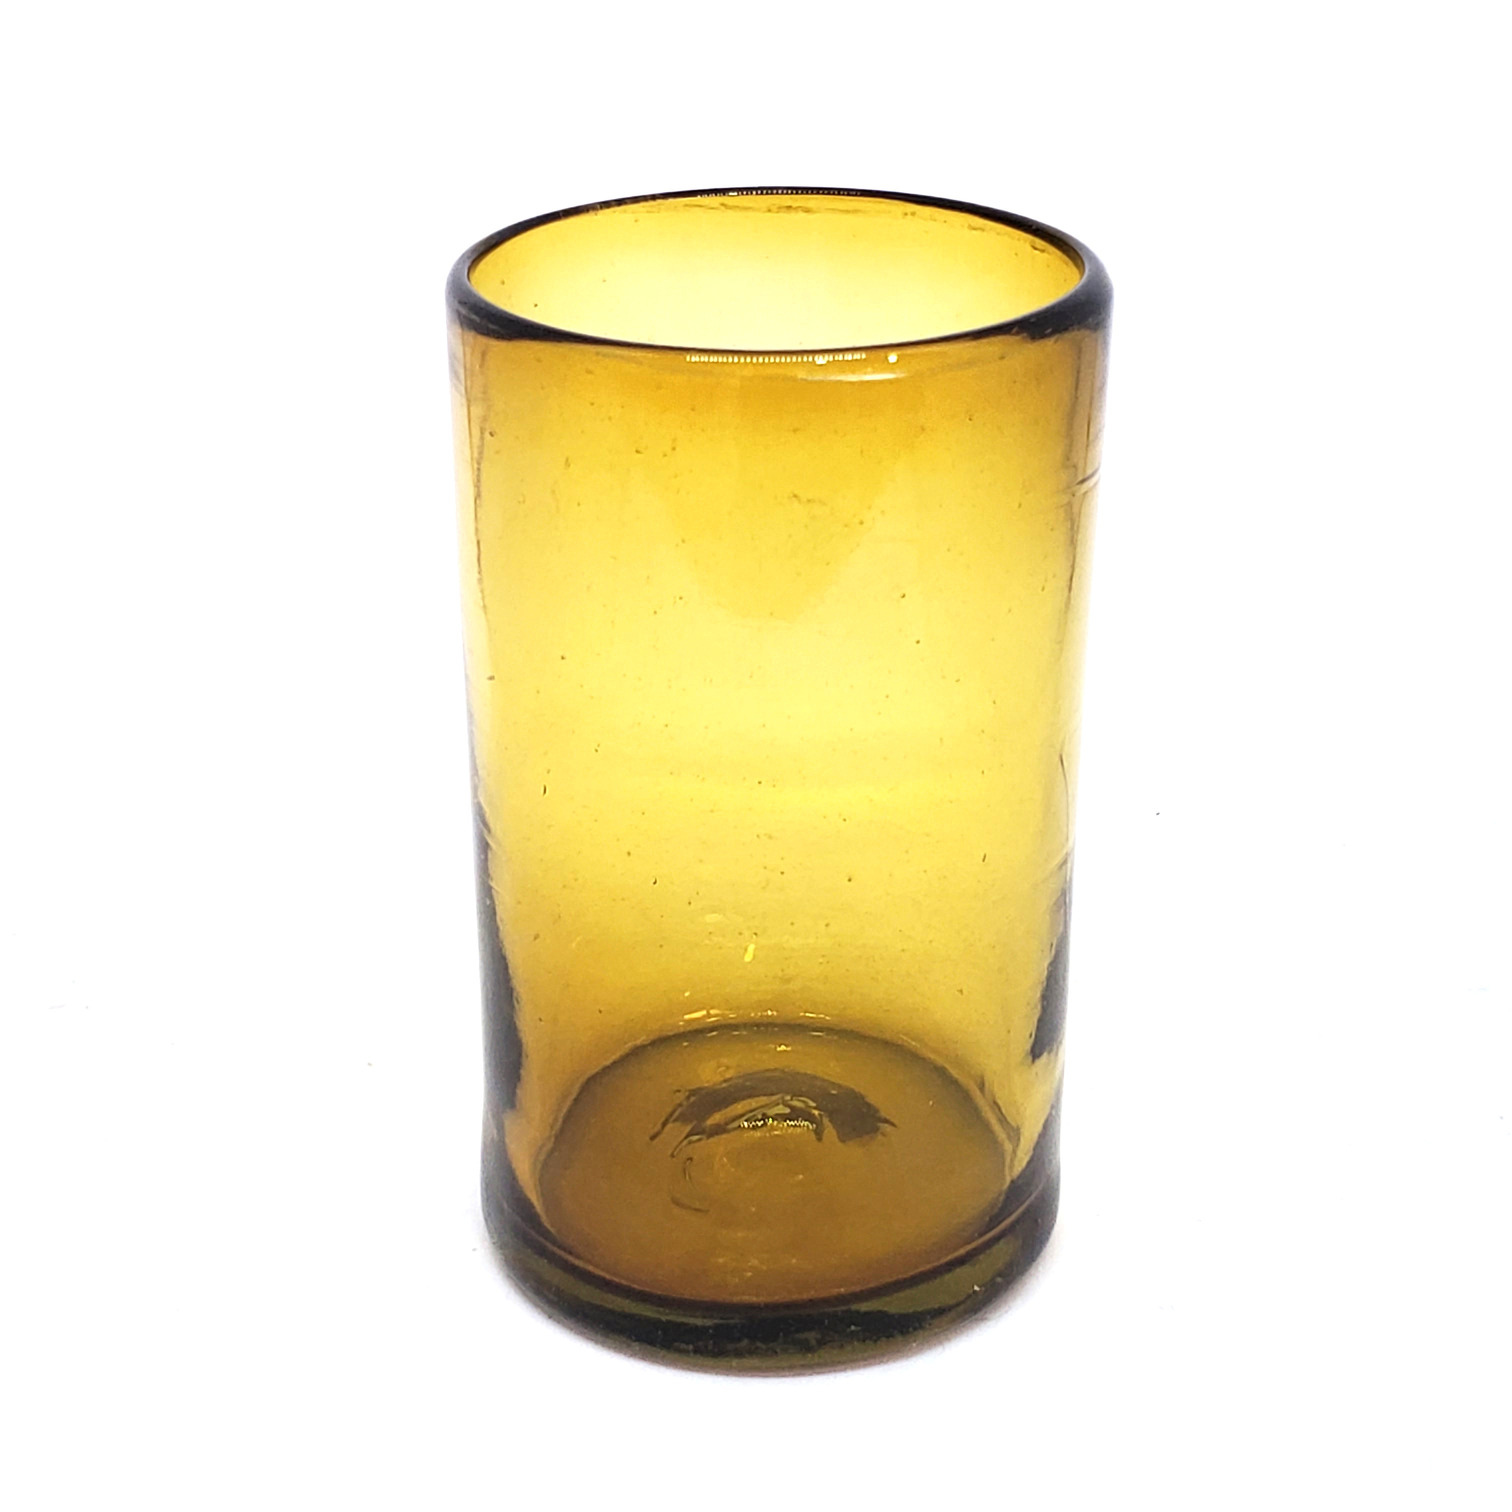 VIDRIO SOPLADO / Juego de 6 vasos grandes color ambar, 14 oz, Vidrio Reciclado, Libre de Plomo y Toxinas